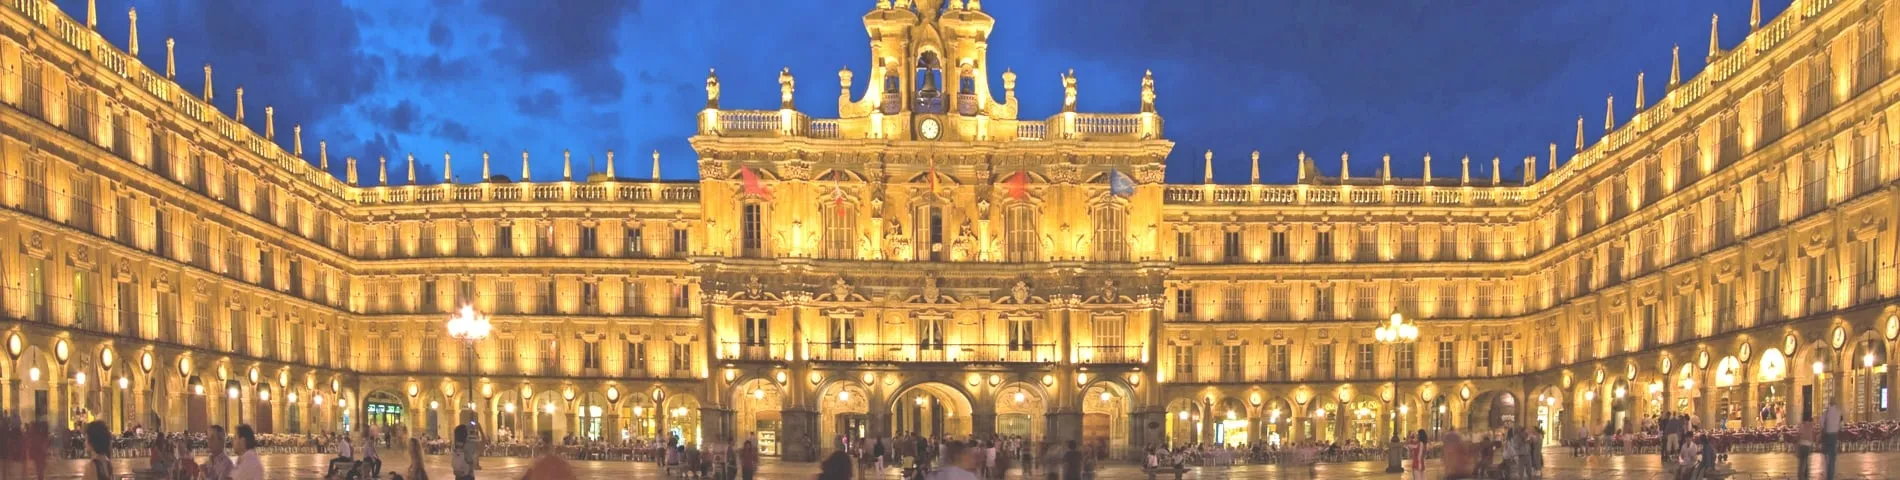 Salamanca - Altres exàmens